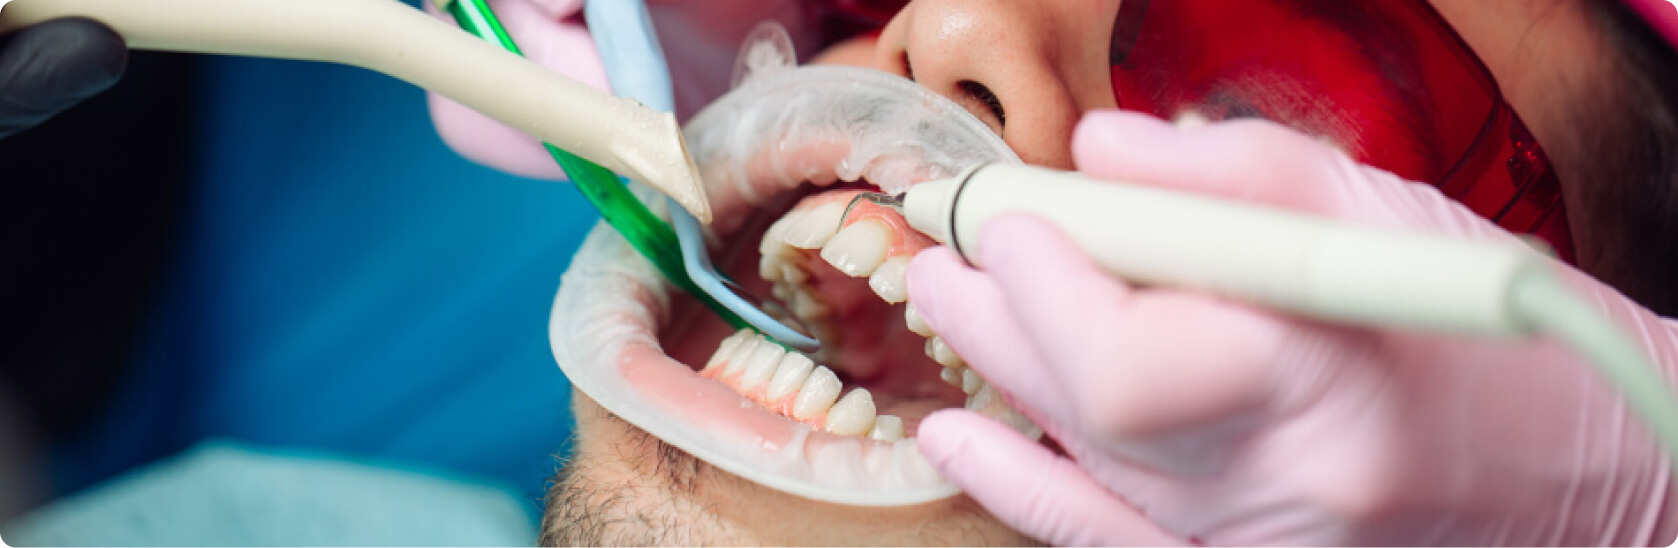 Professionelle Zahnreinigung - Habe ich bei einer professionellen Zahnreinigung Schmerzen?